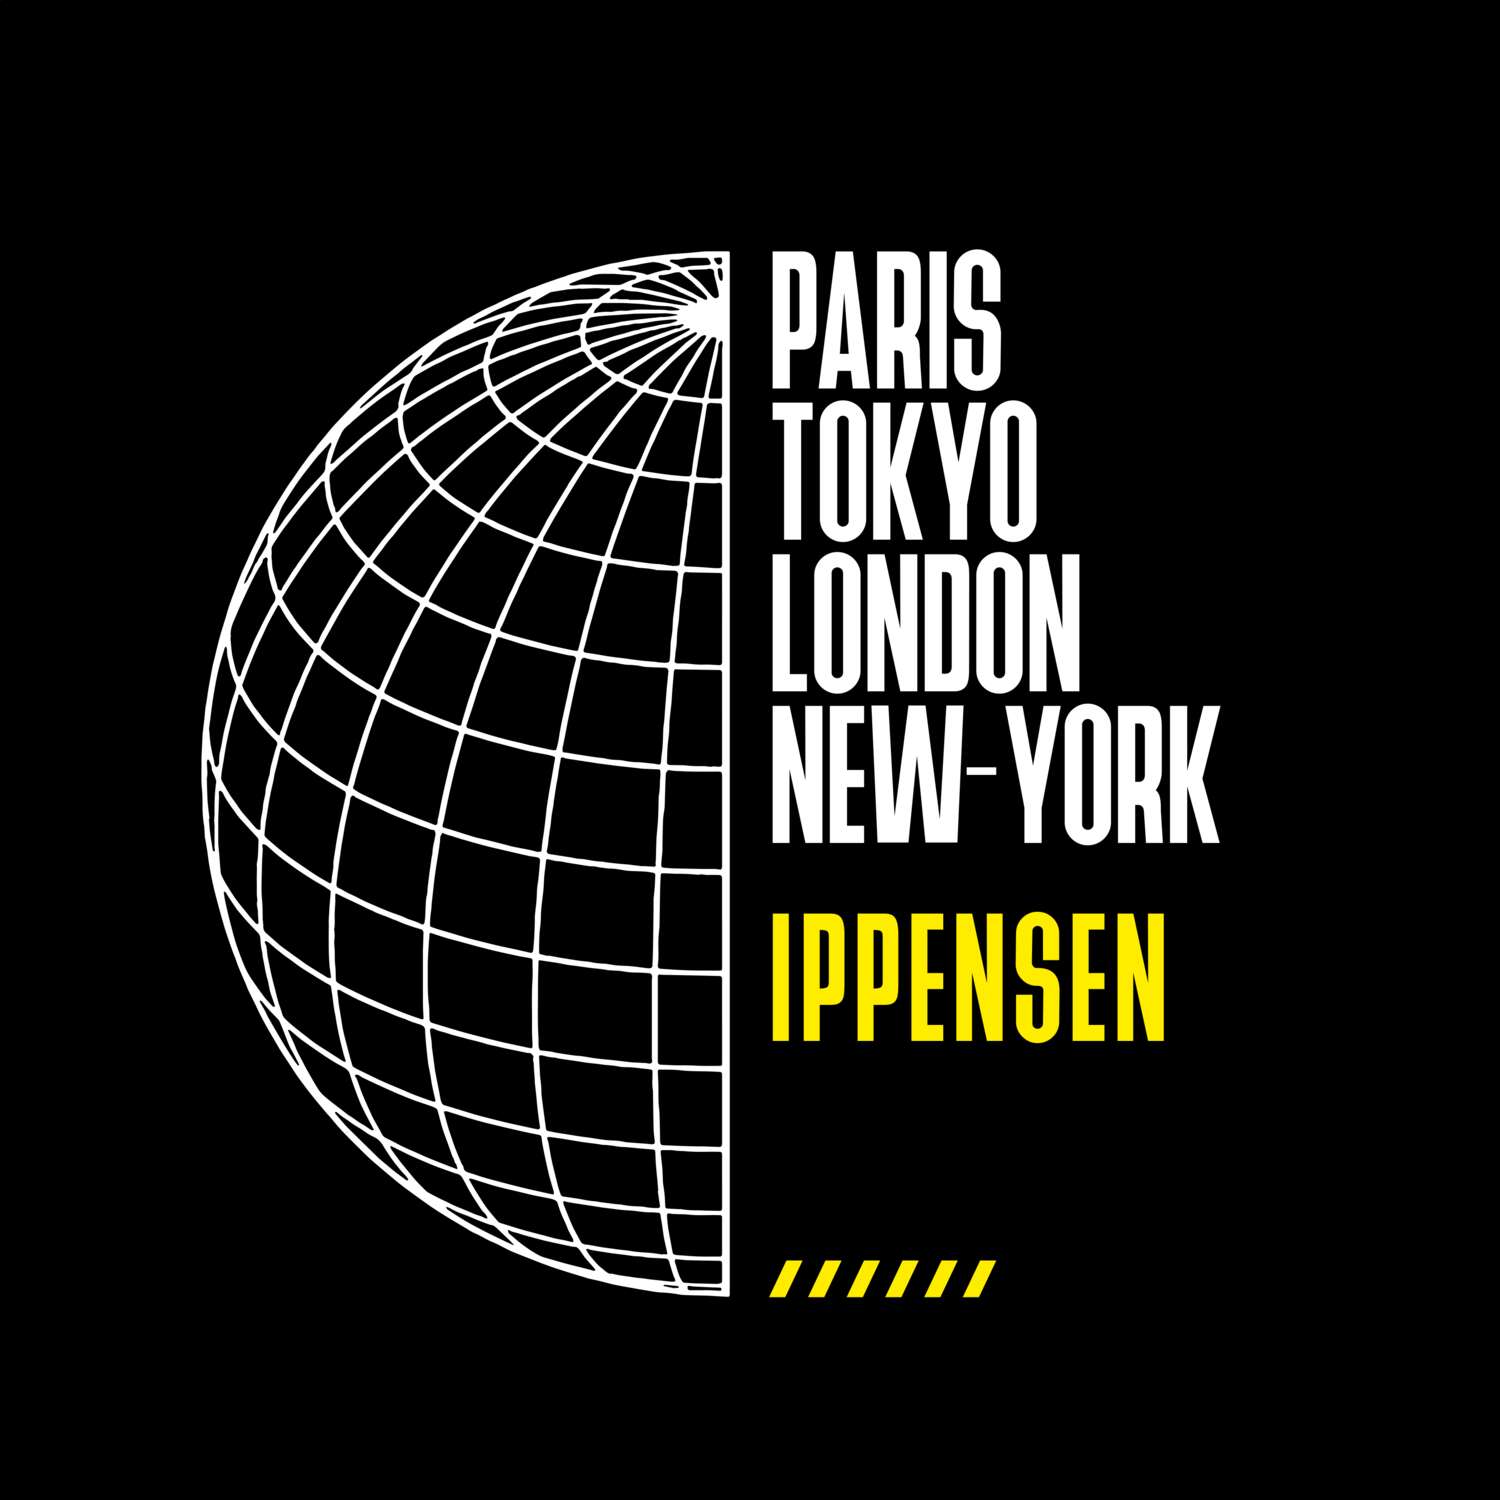 Ippensen T-Shirt »Paris Tokyo London«